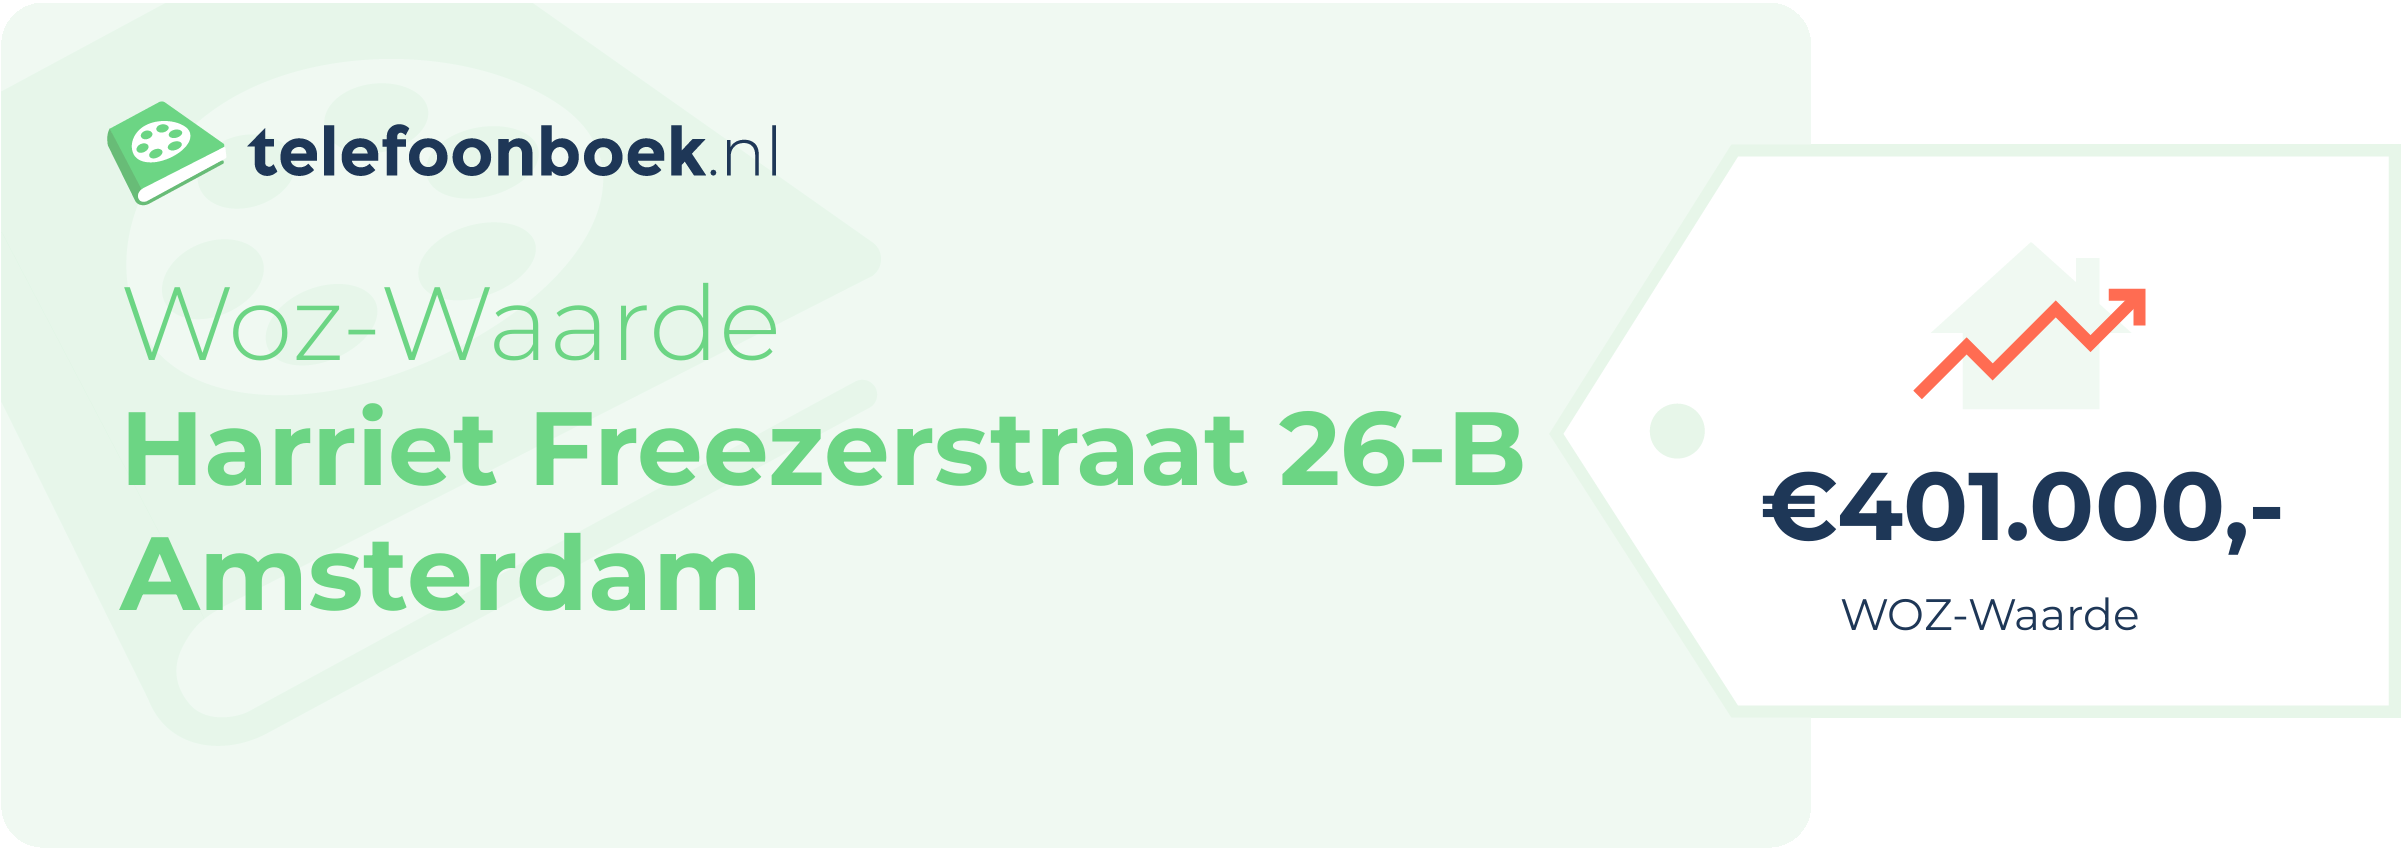 WOZ-waarde Harriet Freezerstraat 26-B Amsterdam